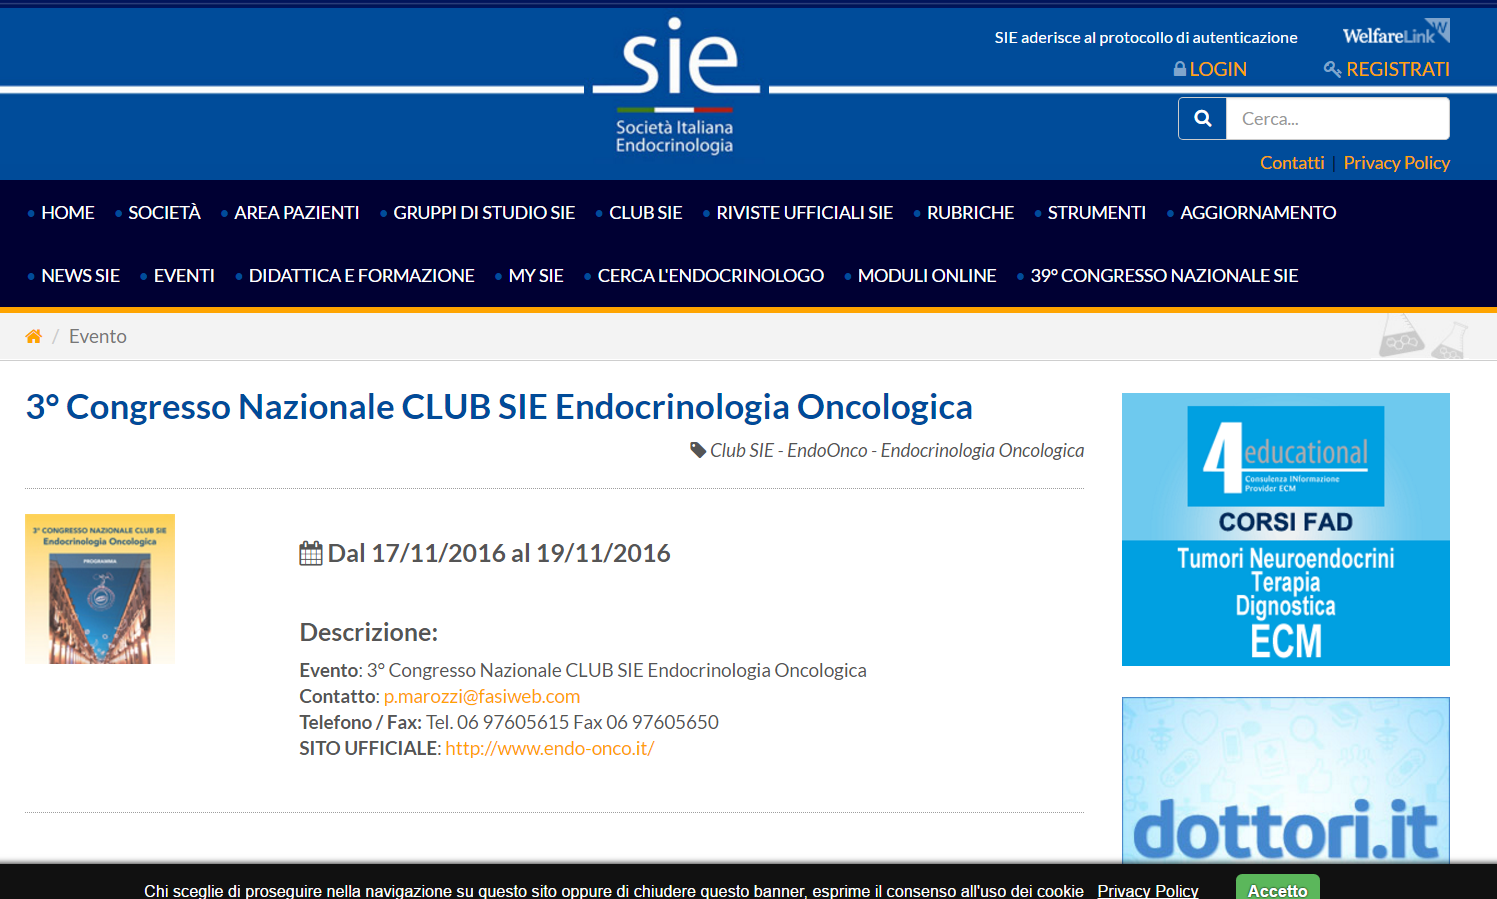 3° Congresso Nazionale Club SIE - Endocrinologia Oncologica